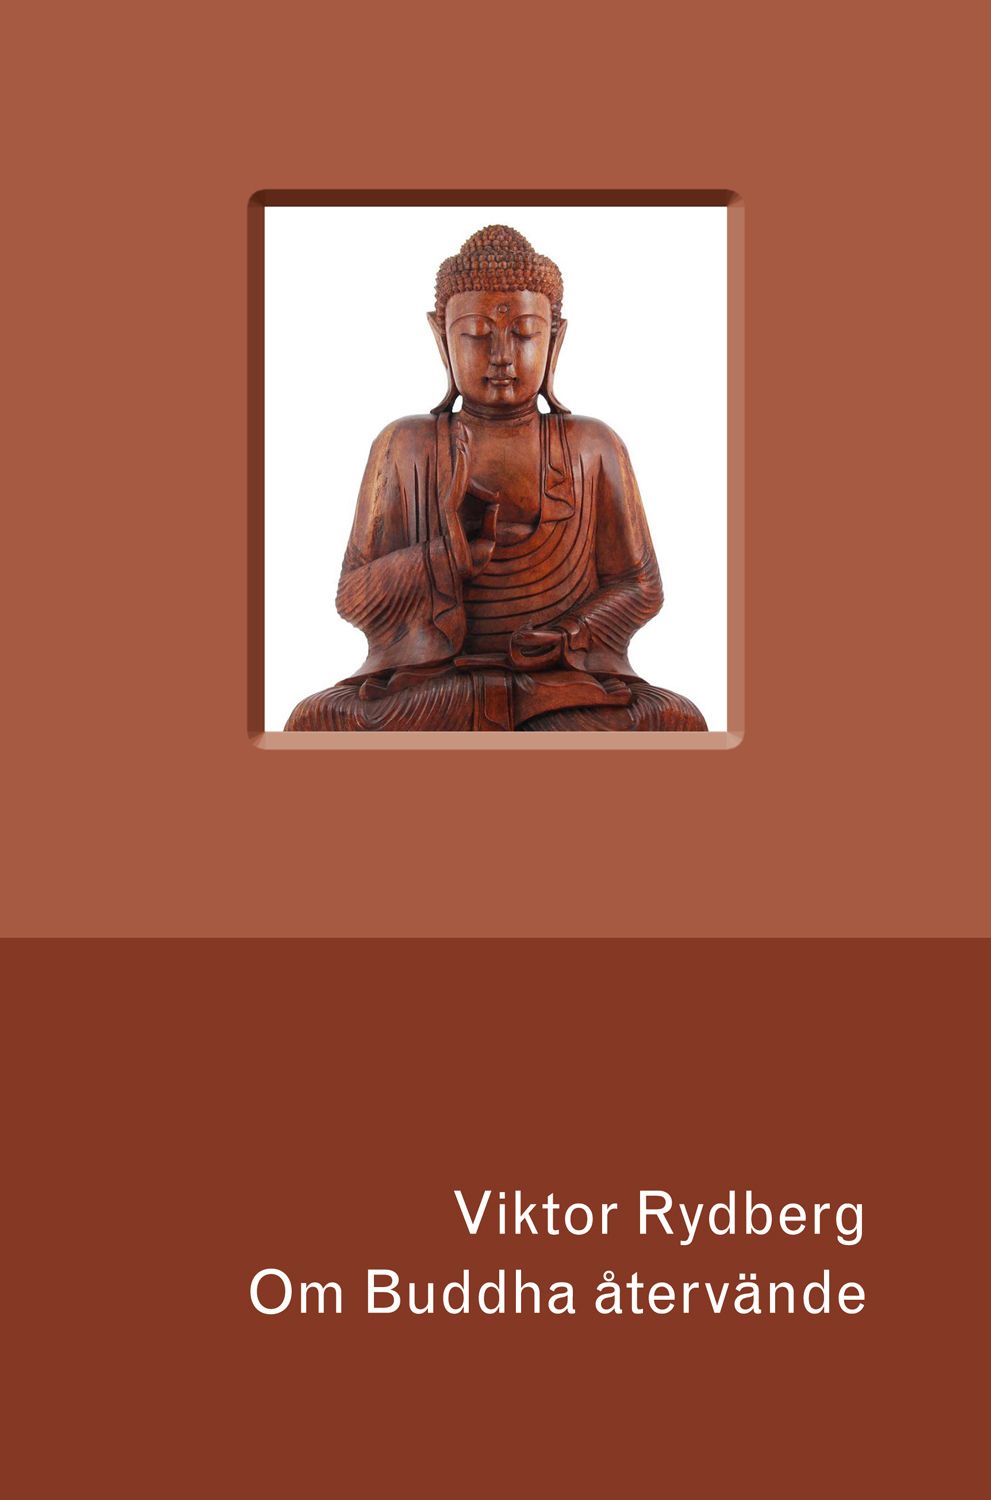 Om Buddha återvände, eBook by Viktor Rydberg